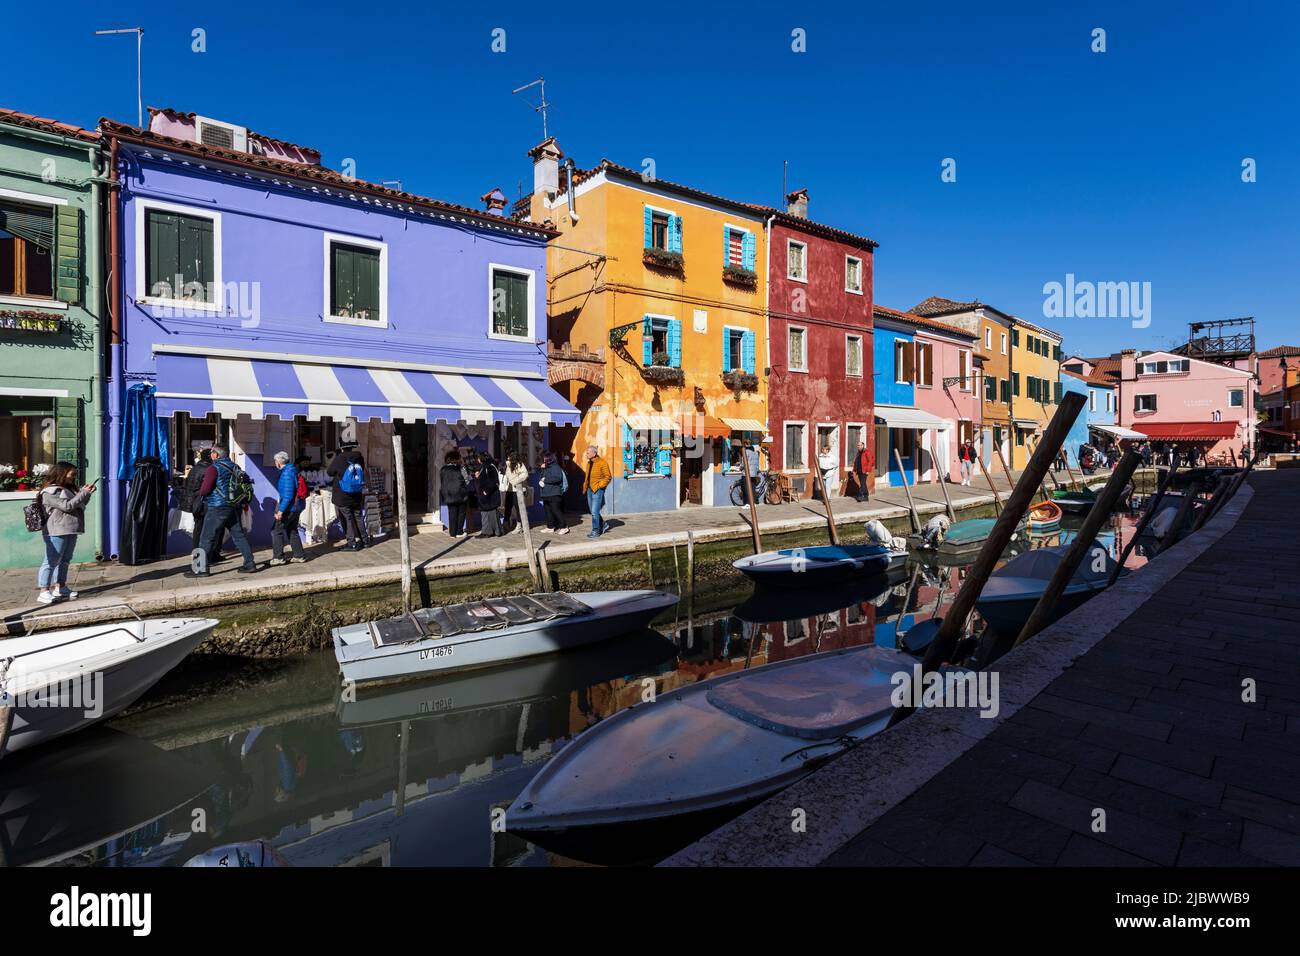 Maisons colorées à Burano, Venise, Italie, Europe Banque D'Images